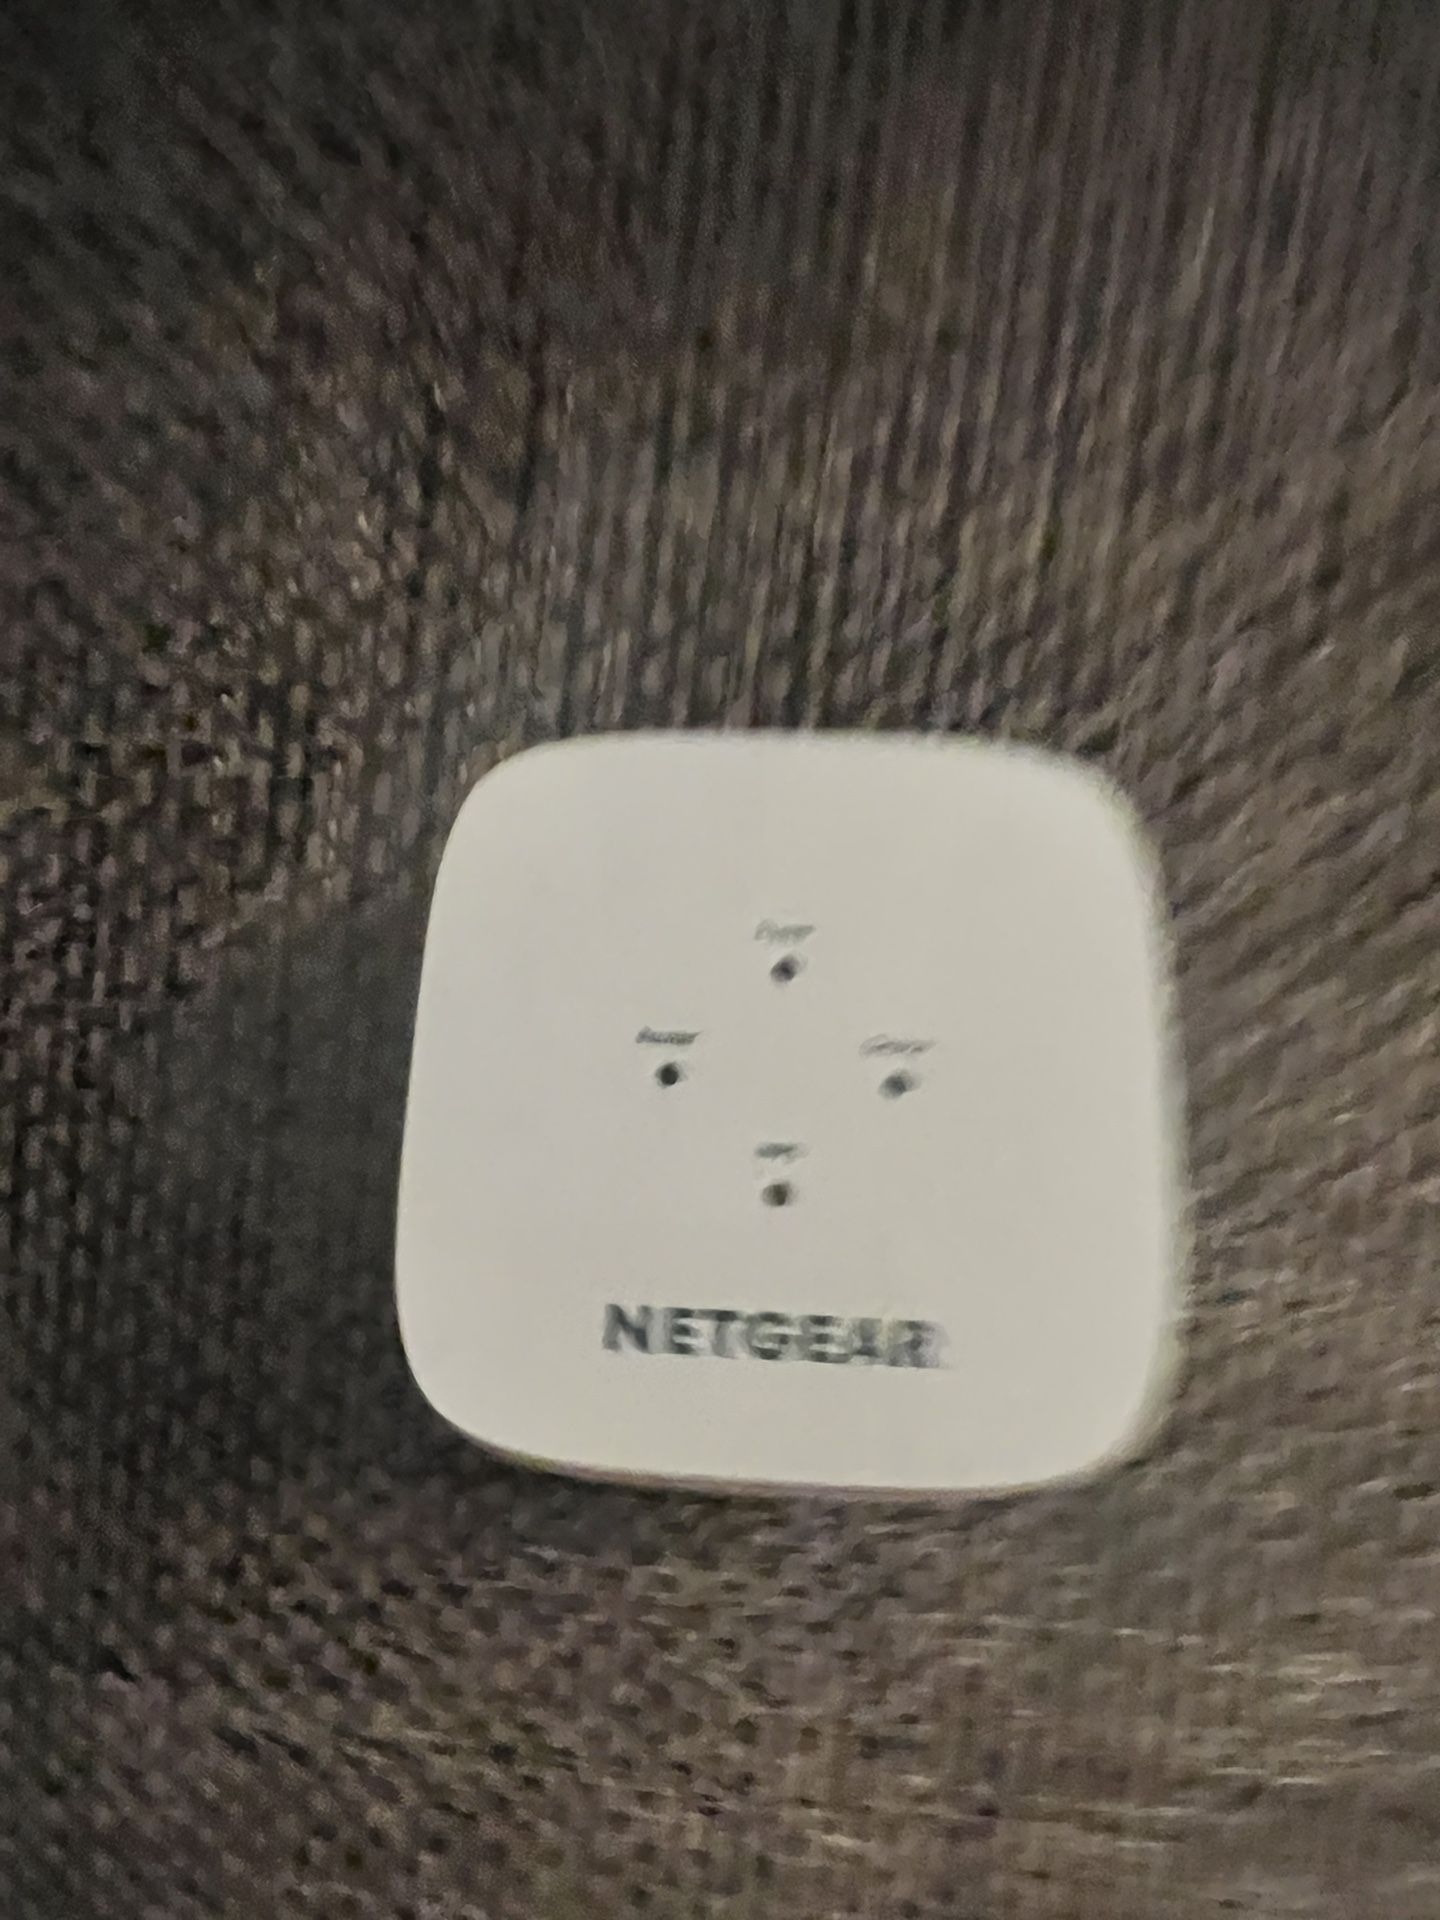 Nighthawk Netgear WiFi Cable Modem Router & WiFi Extenders